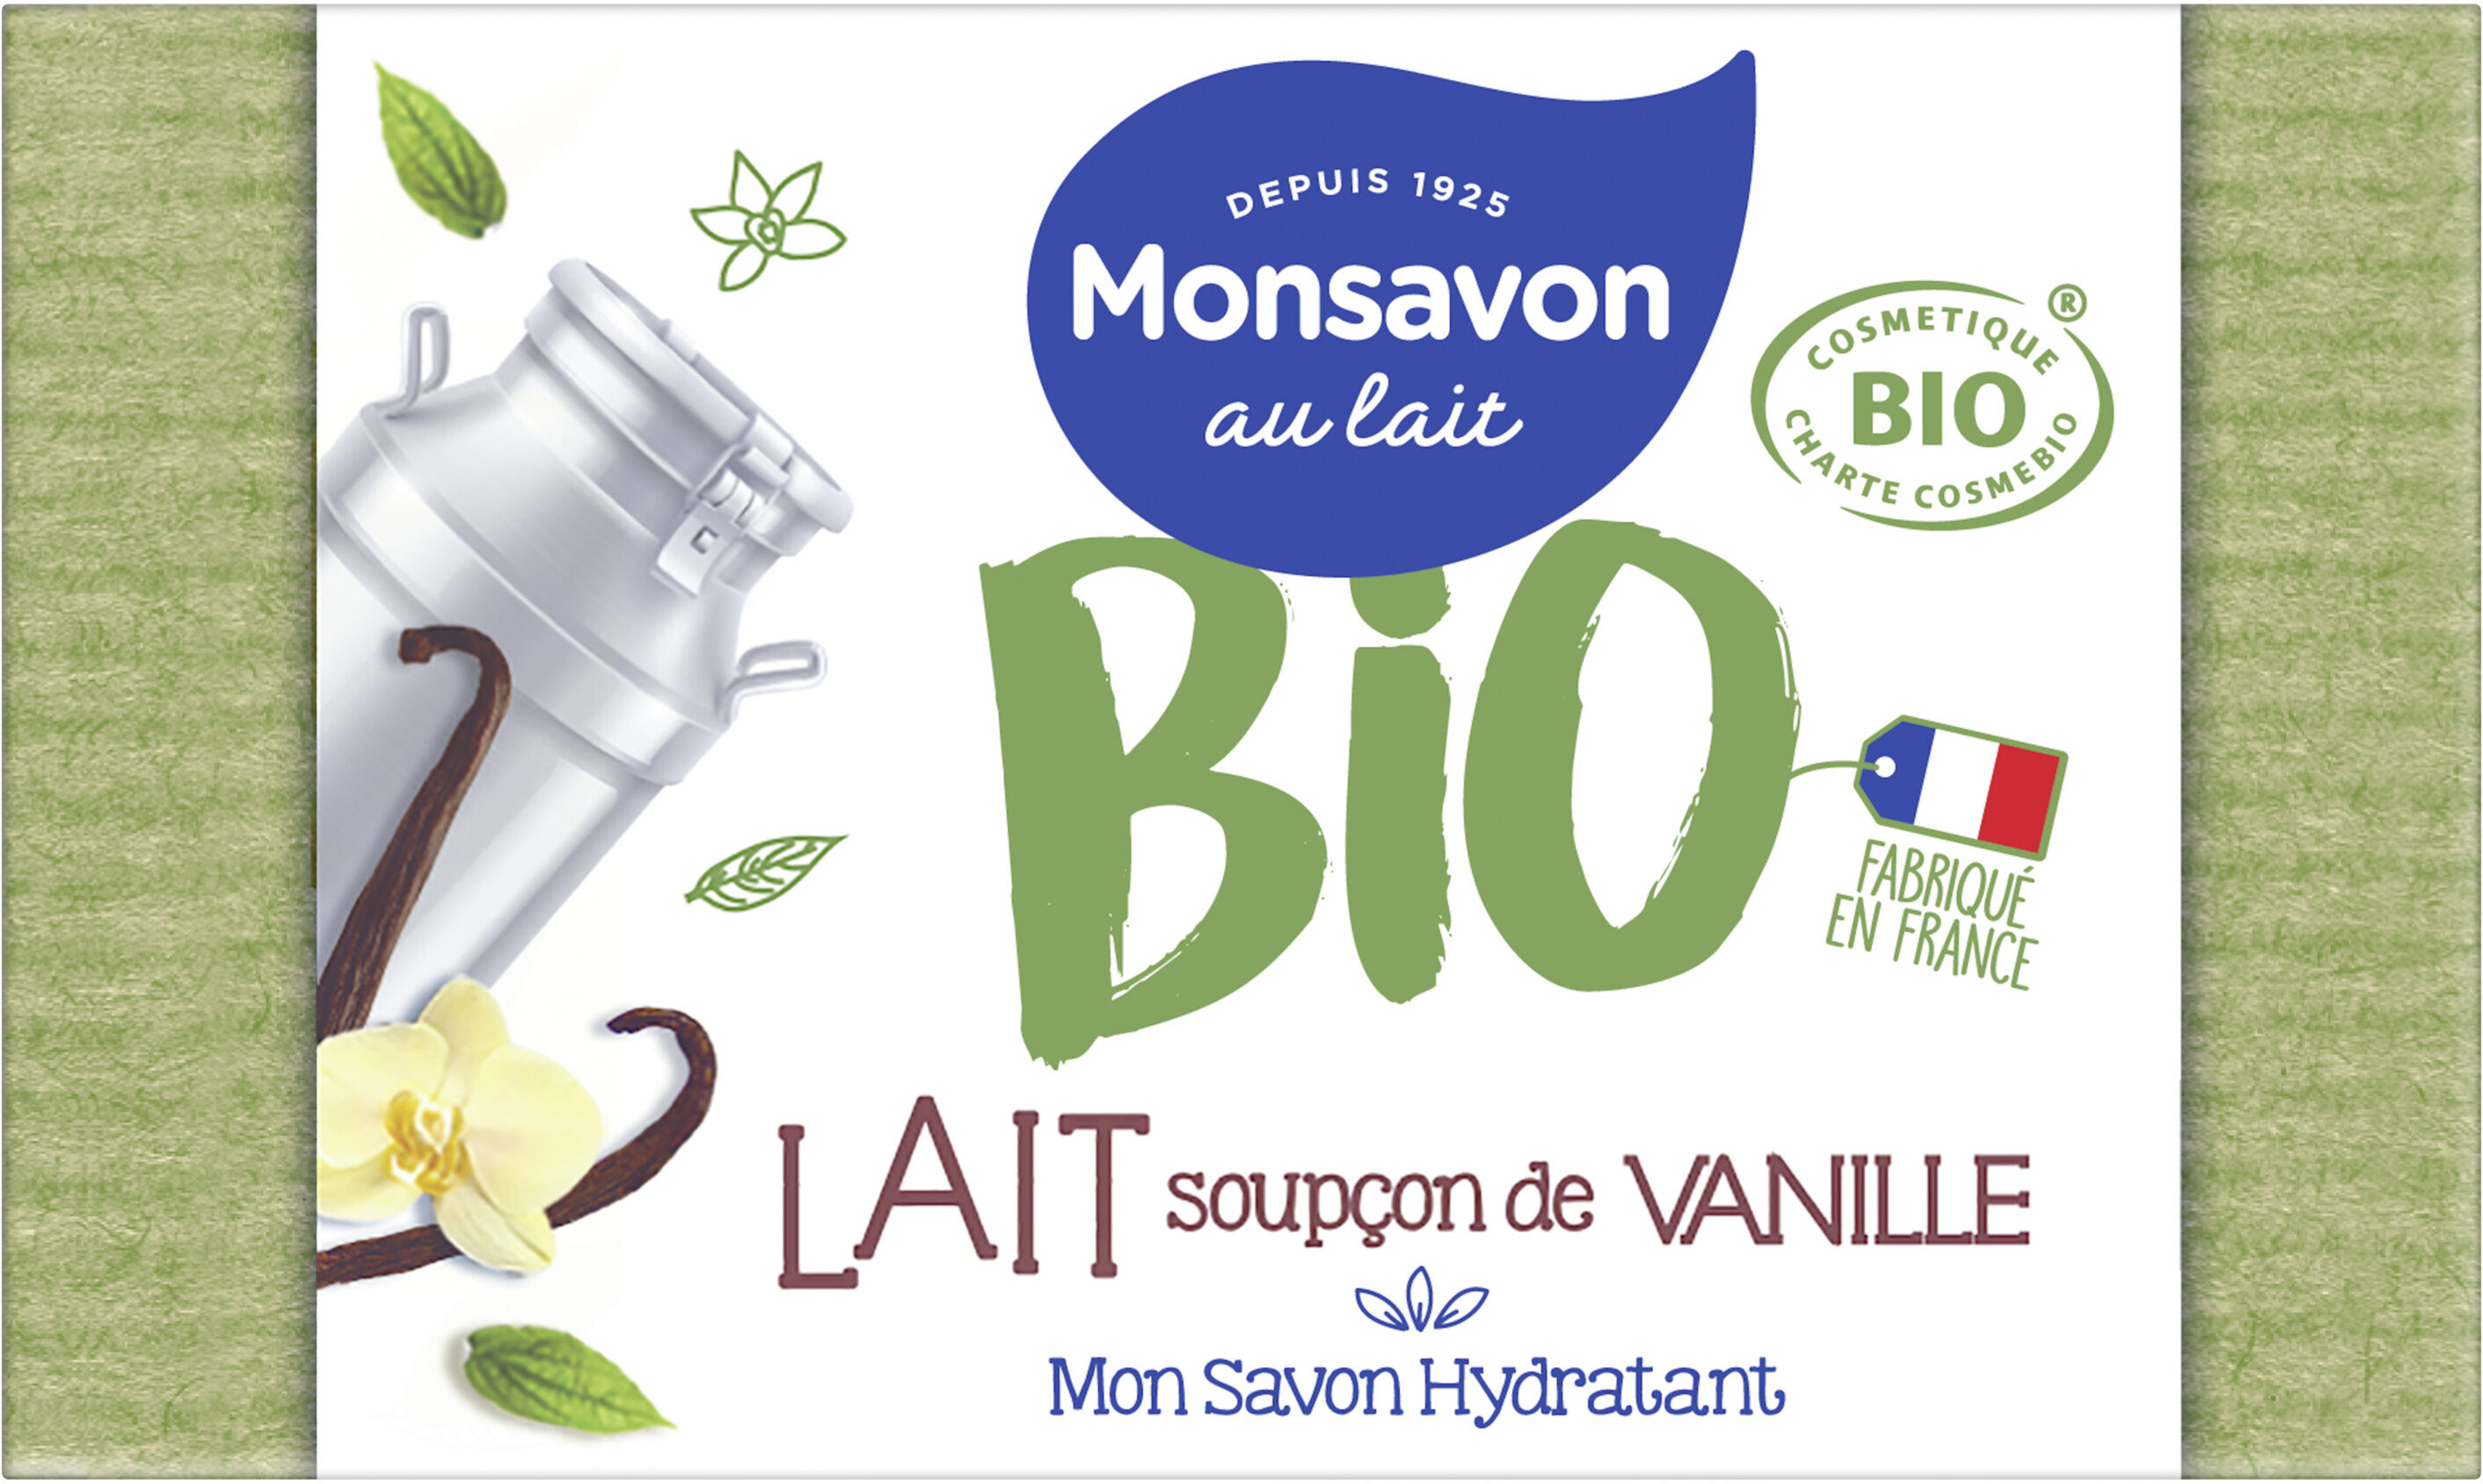 Monsavon Savon Pain de Toilette Hydratant Lait Vanille Cosmebio x1 - Produit - fr